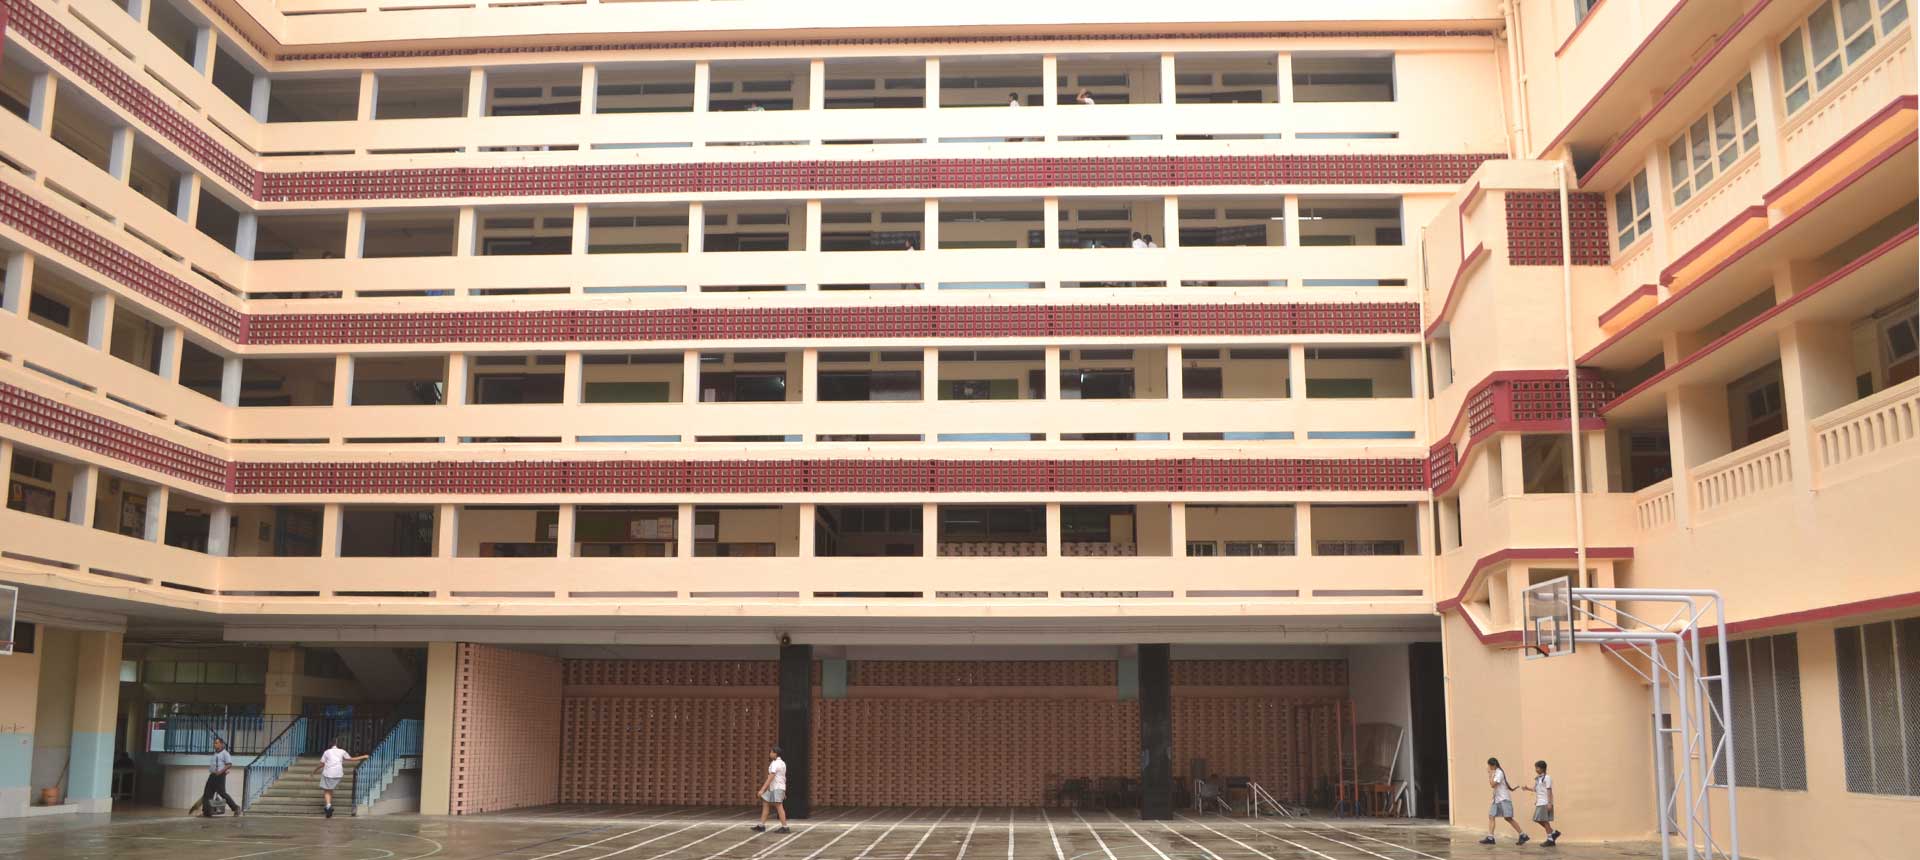 Queen Mary School Campus